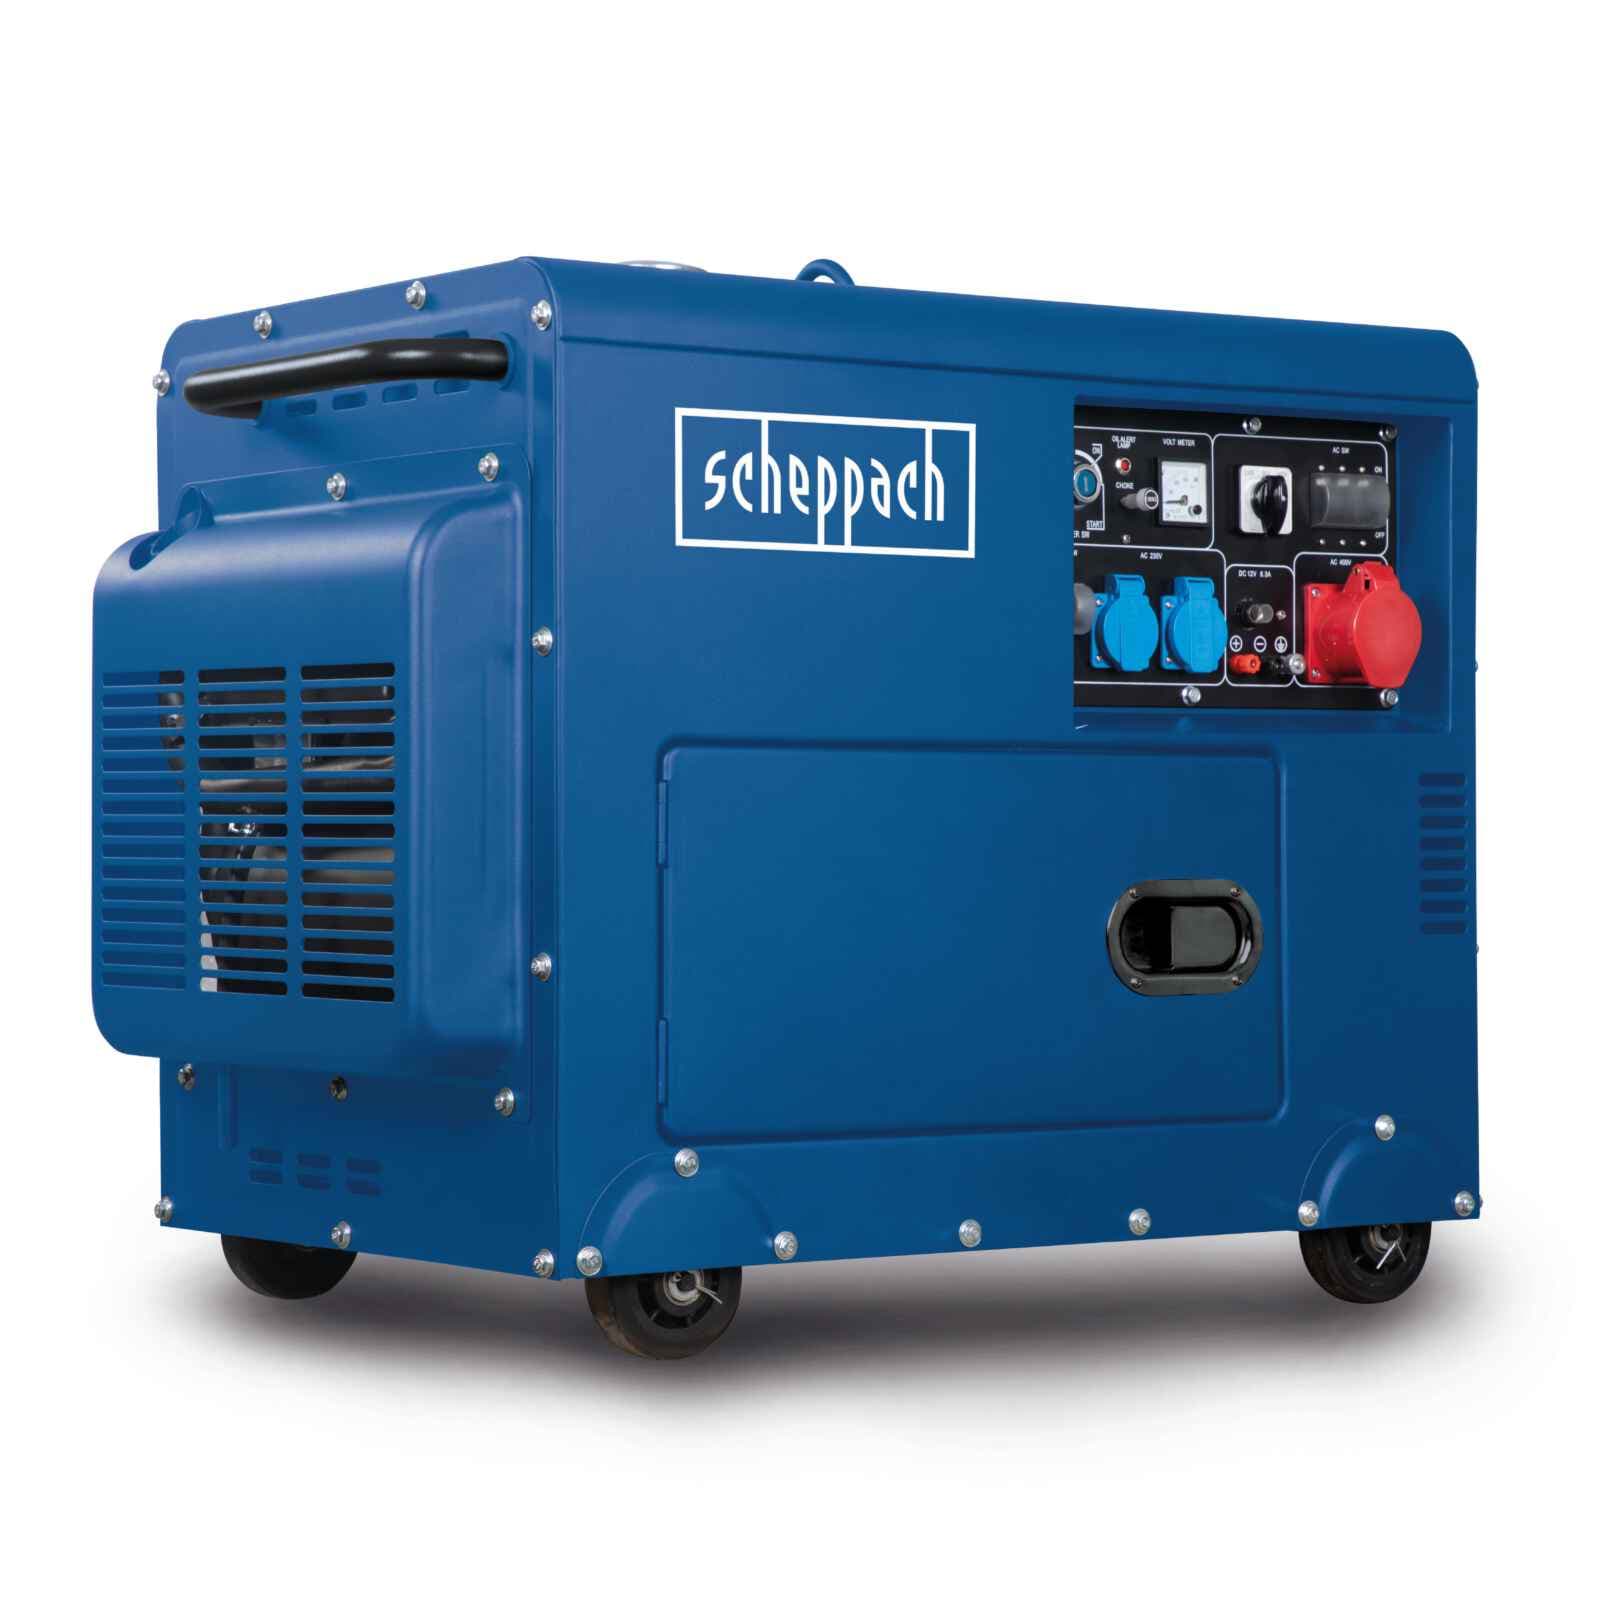 Scheppach Inverter Stromerzeuger SG2500i 4-Takt Generator Notstromaggregat  2000W Lefeld Werkzeug